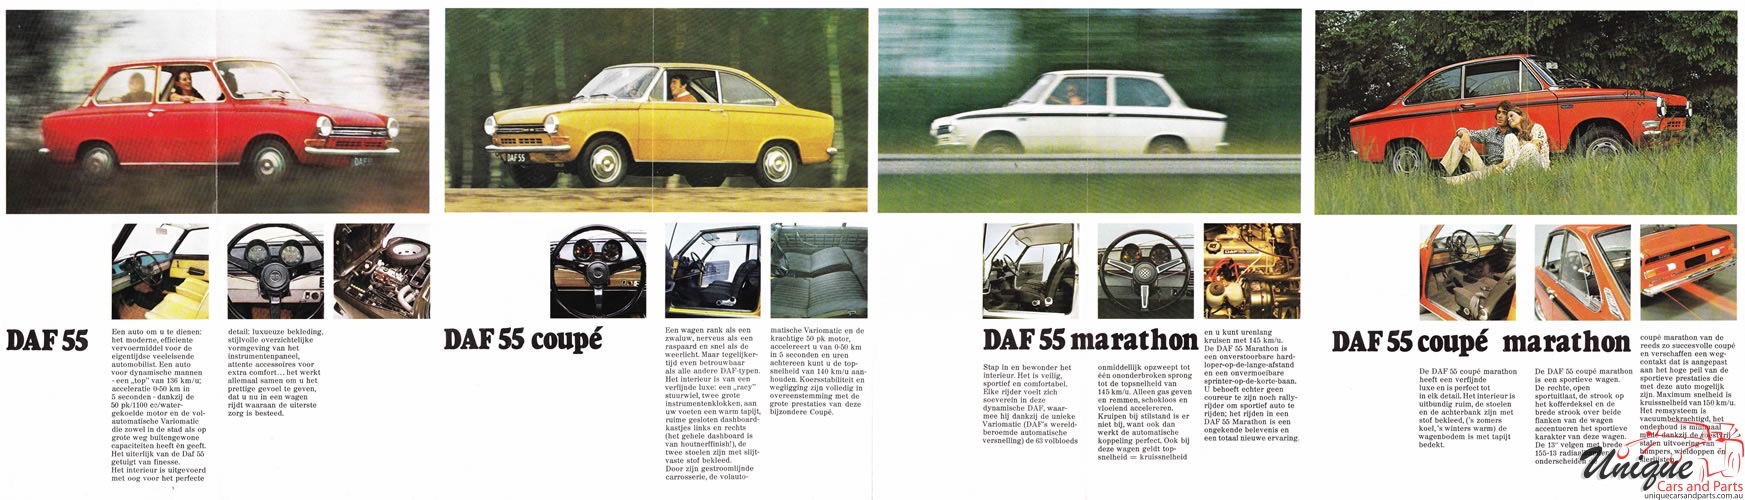 1971 DAF Model Range Brochure Page 5